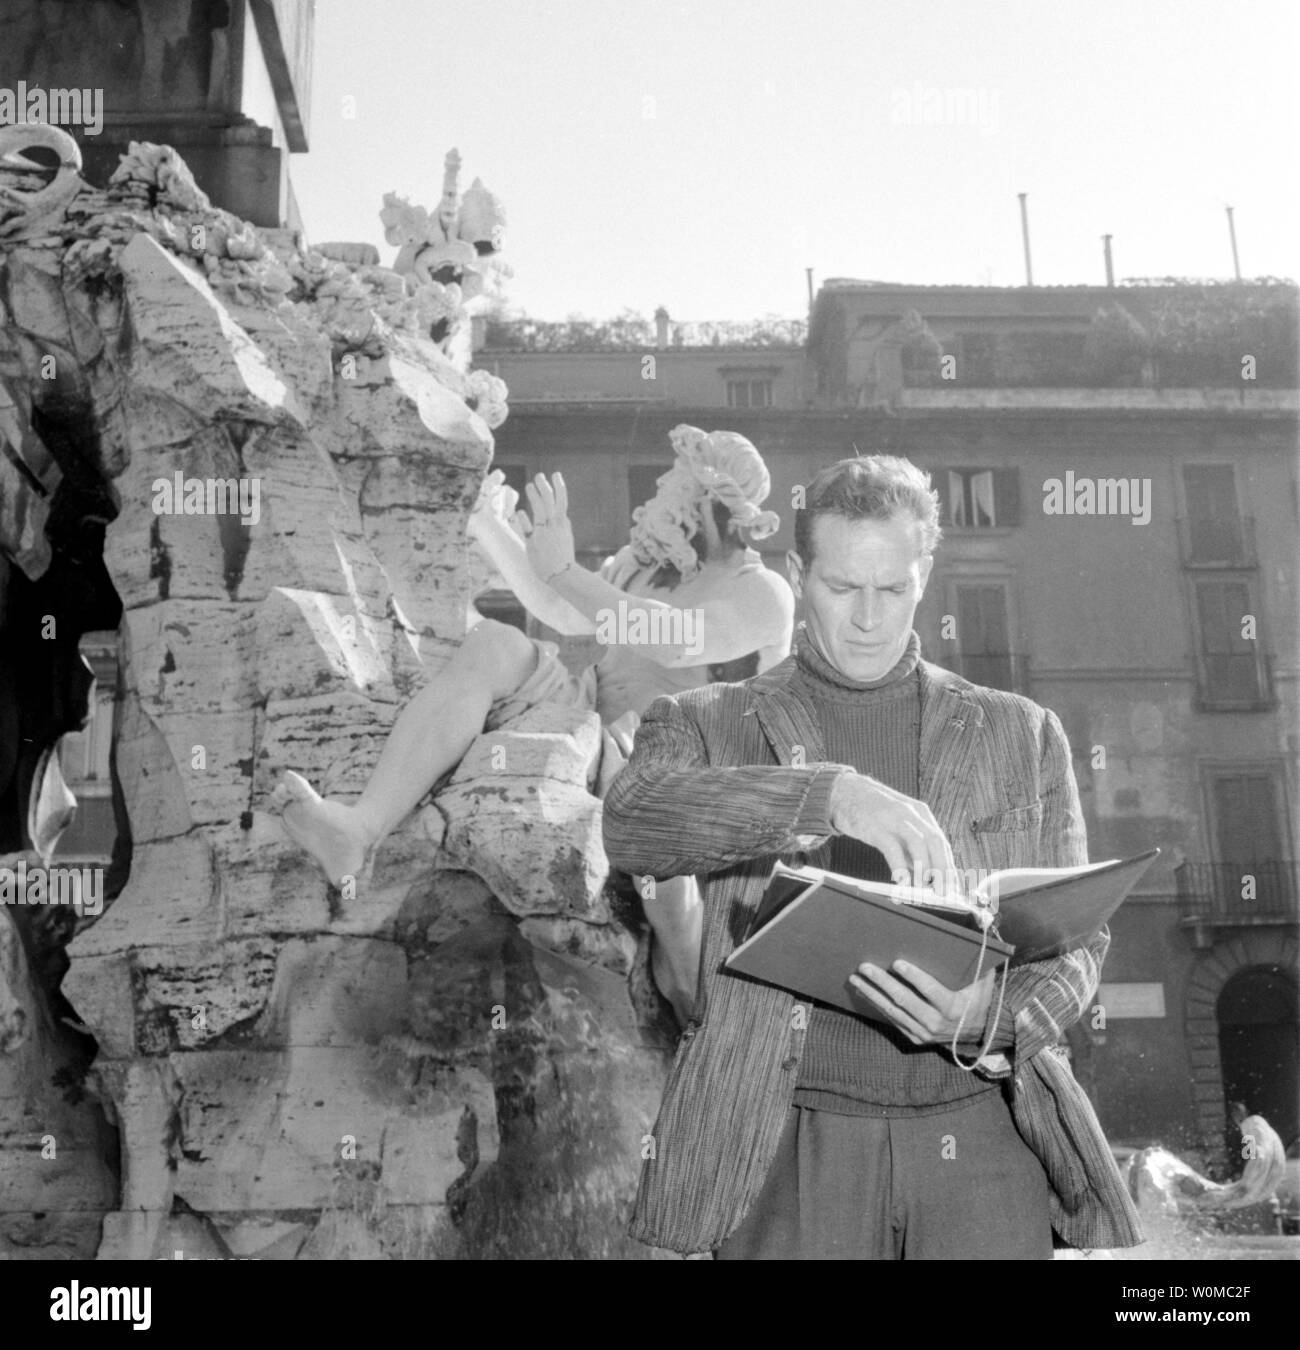 Charlton Heston starb im Alter von 84 Jahren in seinem Haus in Beverly Hills am 5. April 2008. Er ist in dieser Datei Foto um 1960 über das Skript während der Dreharbeiten zu "Die Taube, nahm Rom", die 1961 uraufgeführt wurde. (UPI Foto/Dateien) Stockfoto